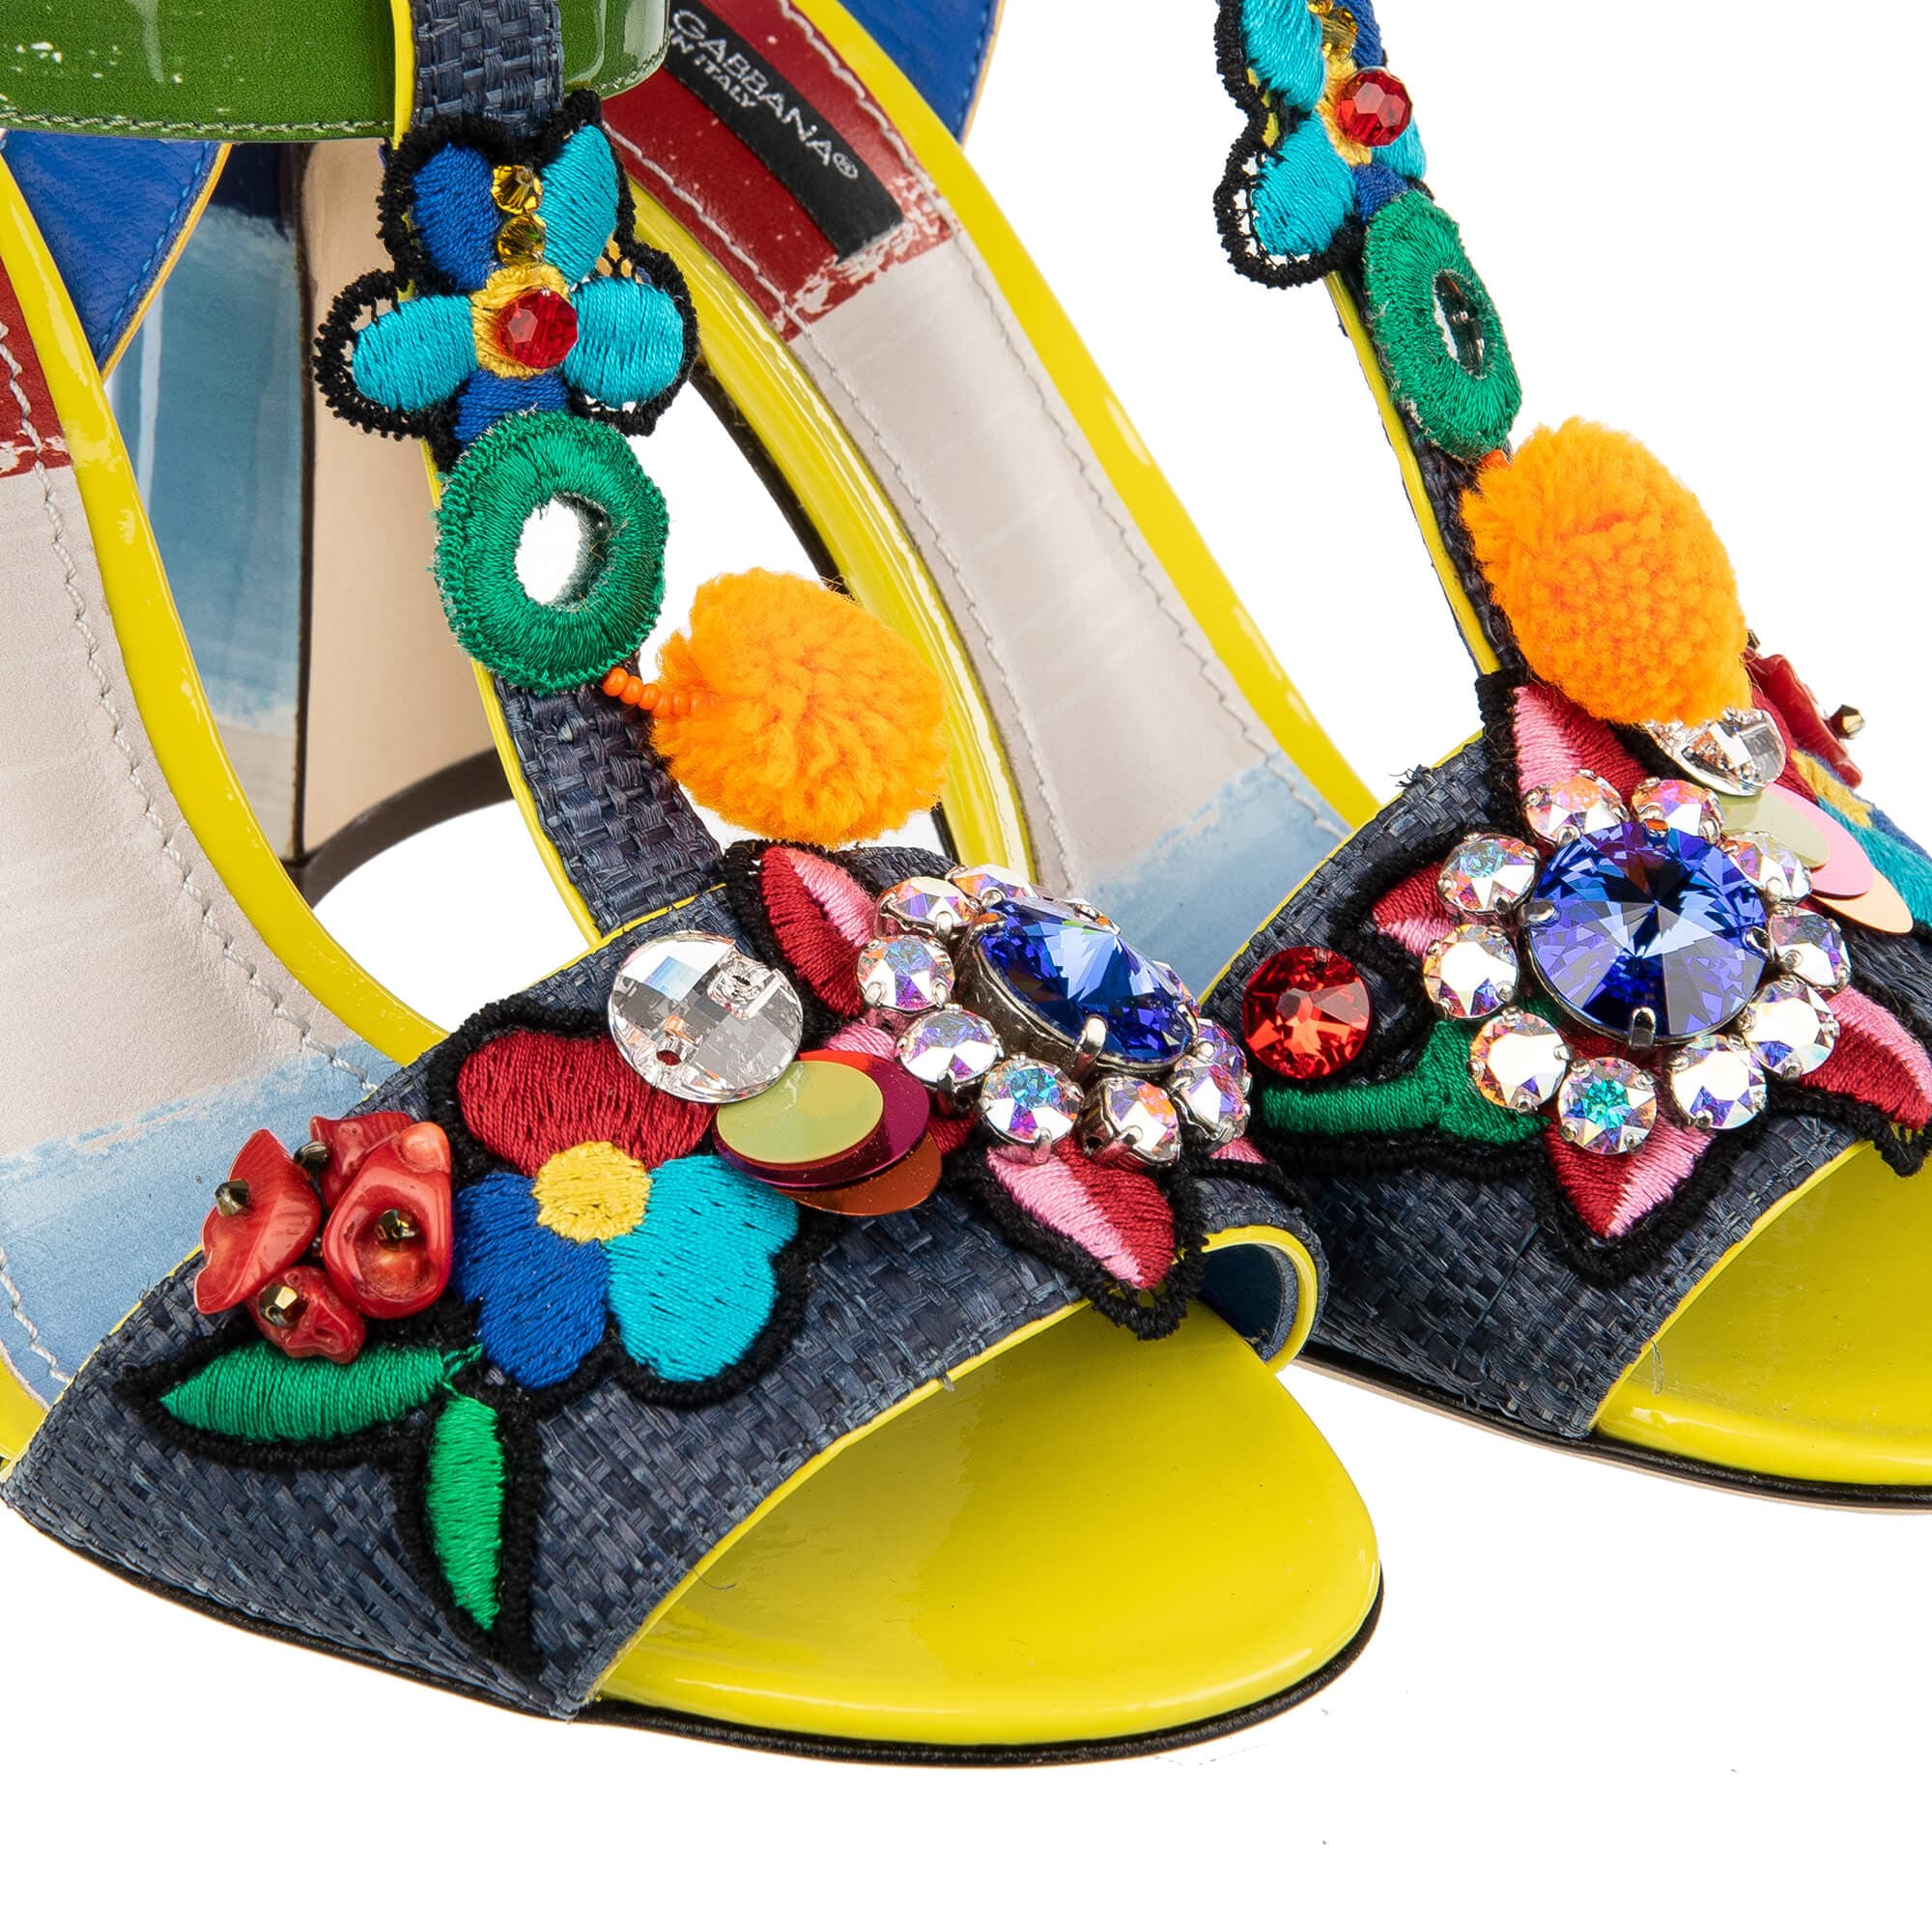 Dolce & Gabbana Keira Crystal Embellished Sandals